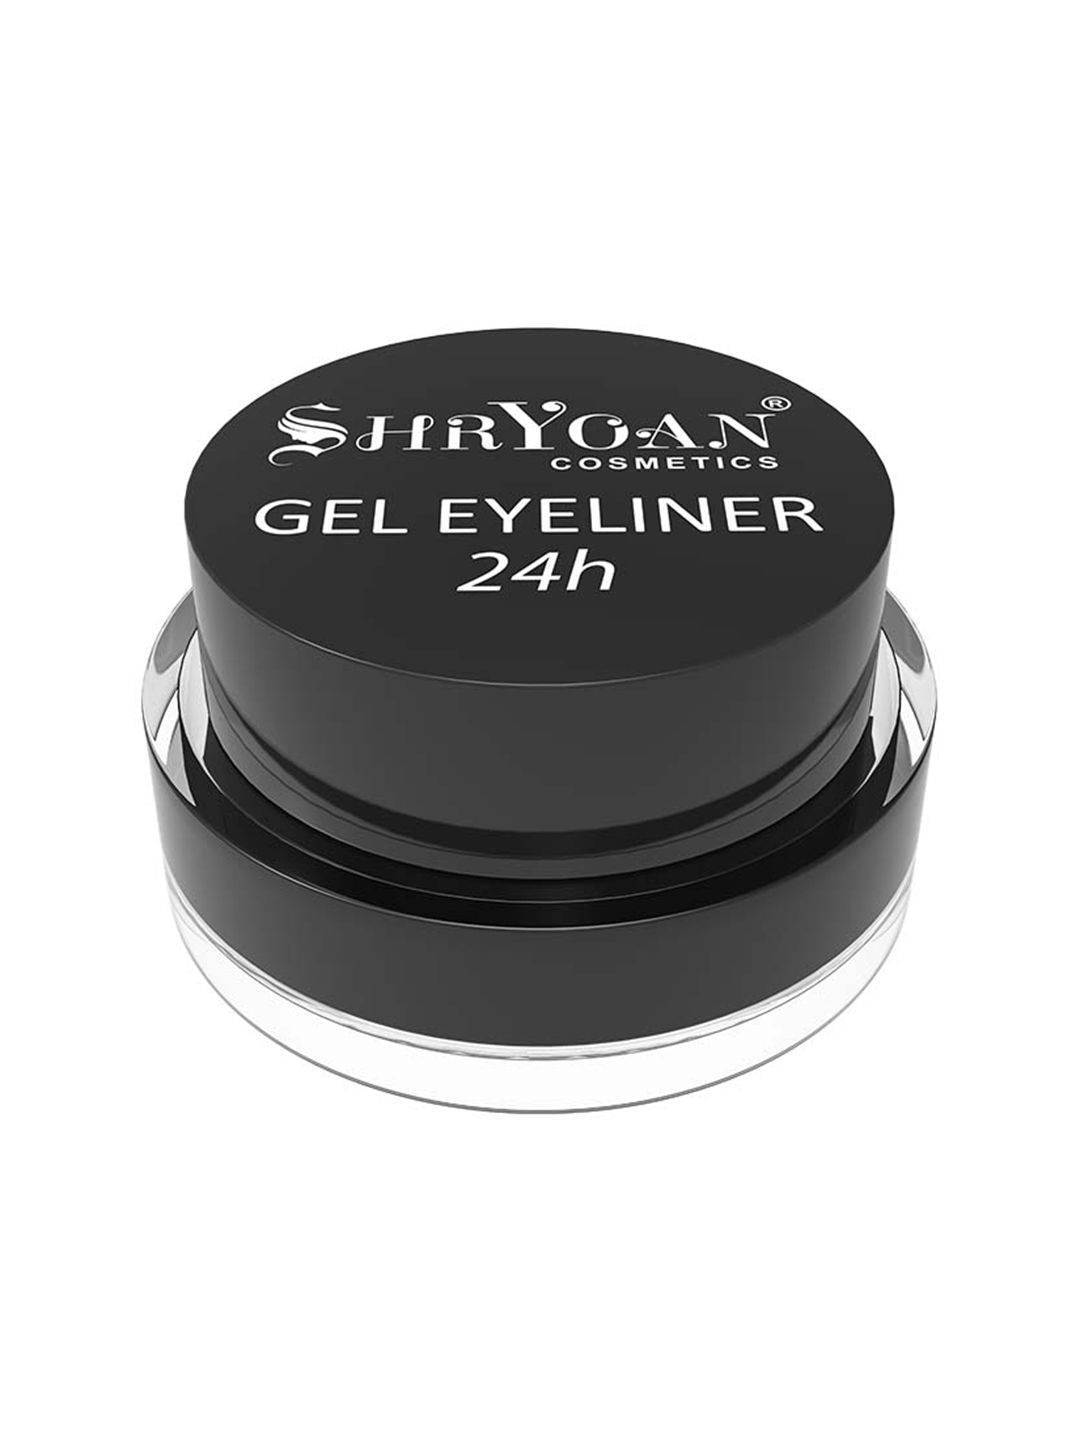 SHRYOAN Hour Gel Eyeliner 4 g - Black Price in India